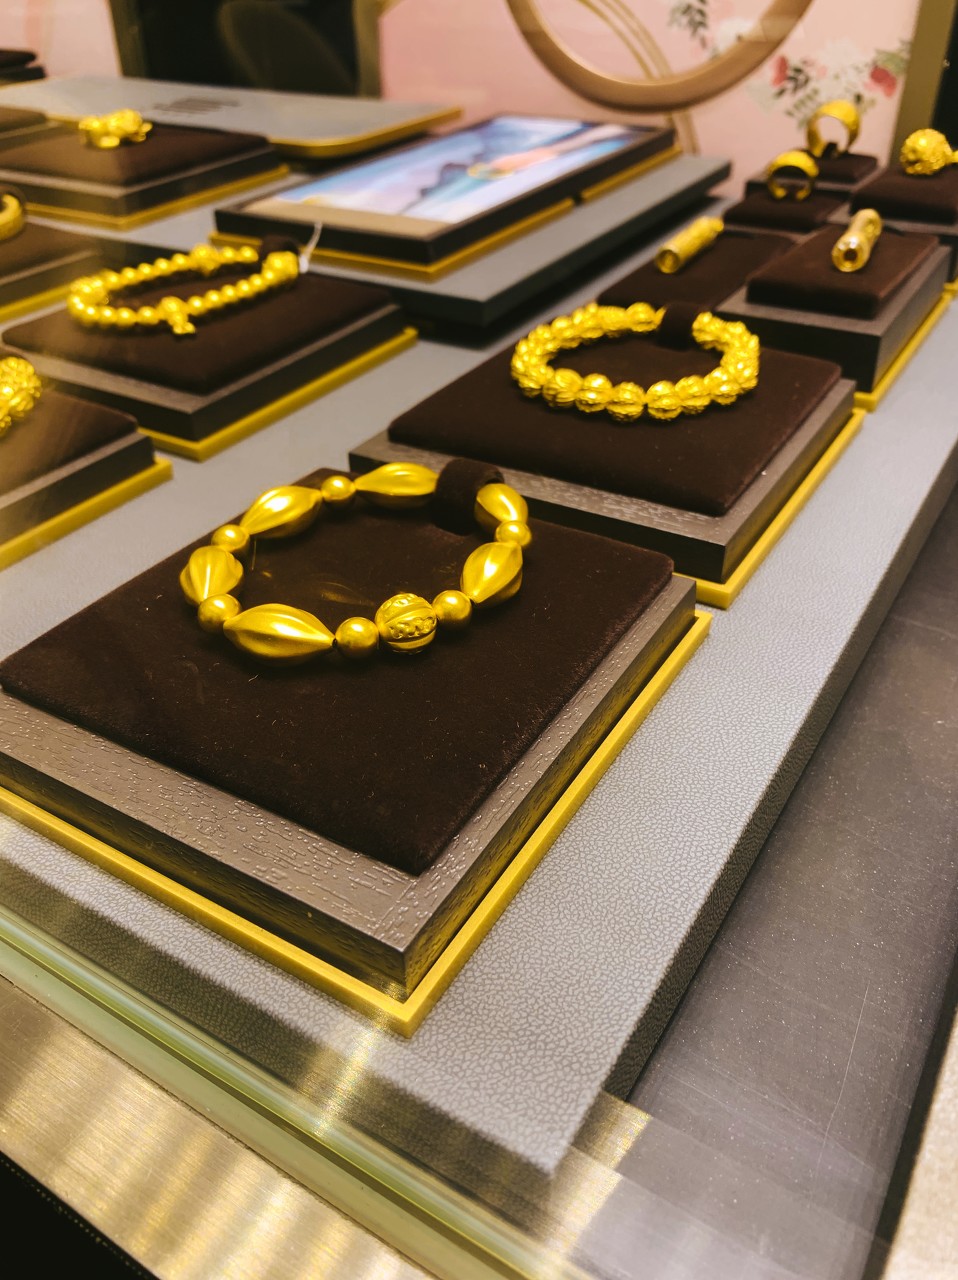 中国黄金协会正式发布《古法金镶嵌钻石饰品》团体标准